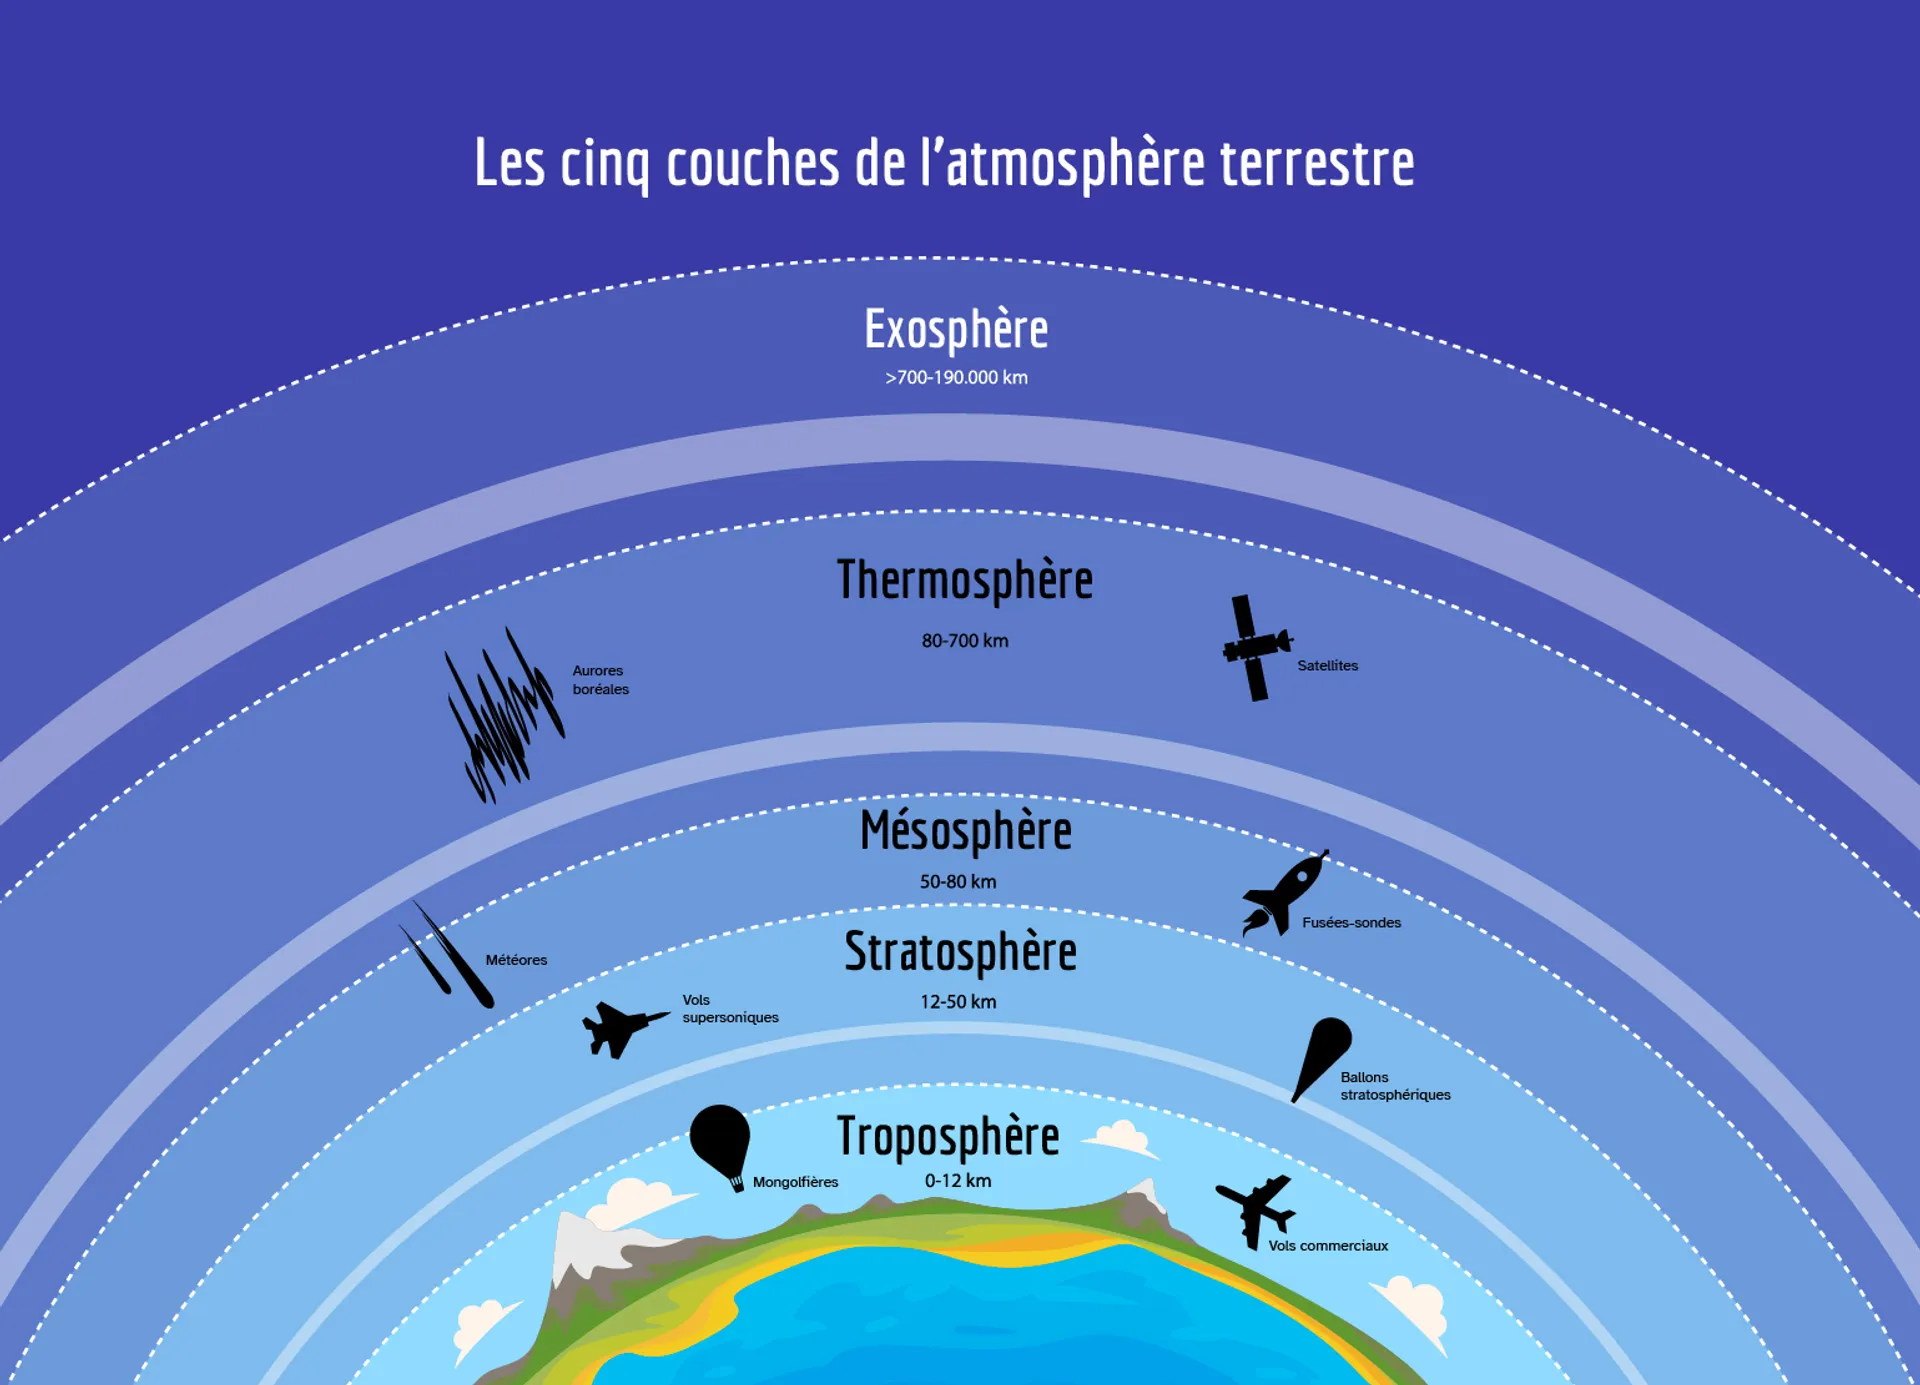 Les cinq couches de l’atmosphère terrestre